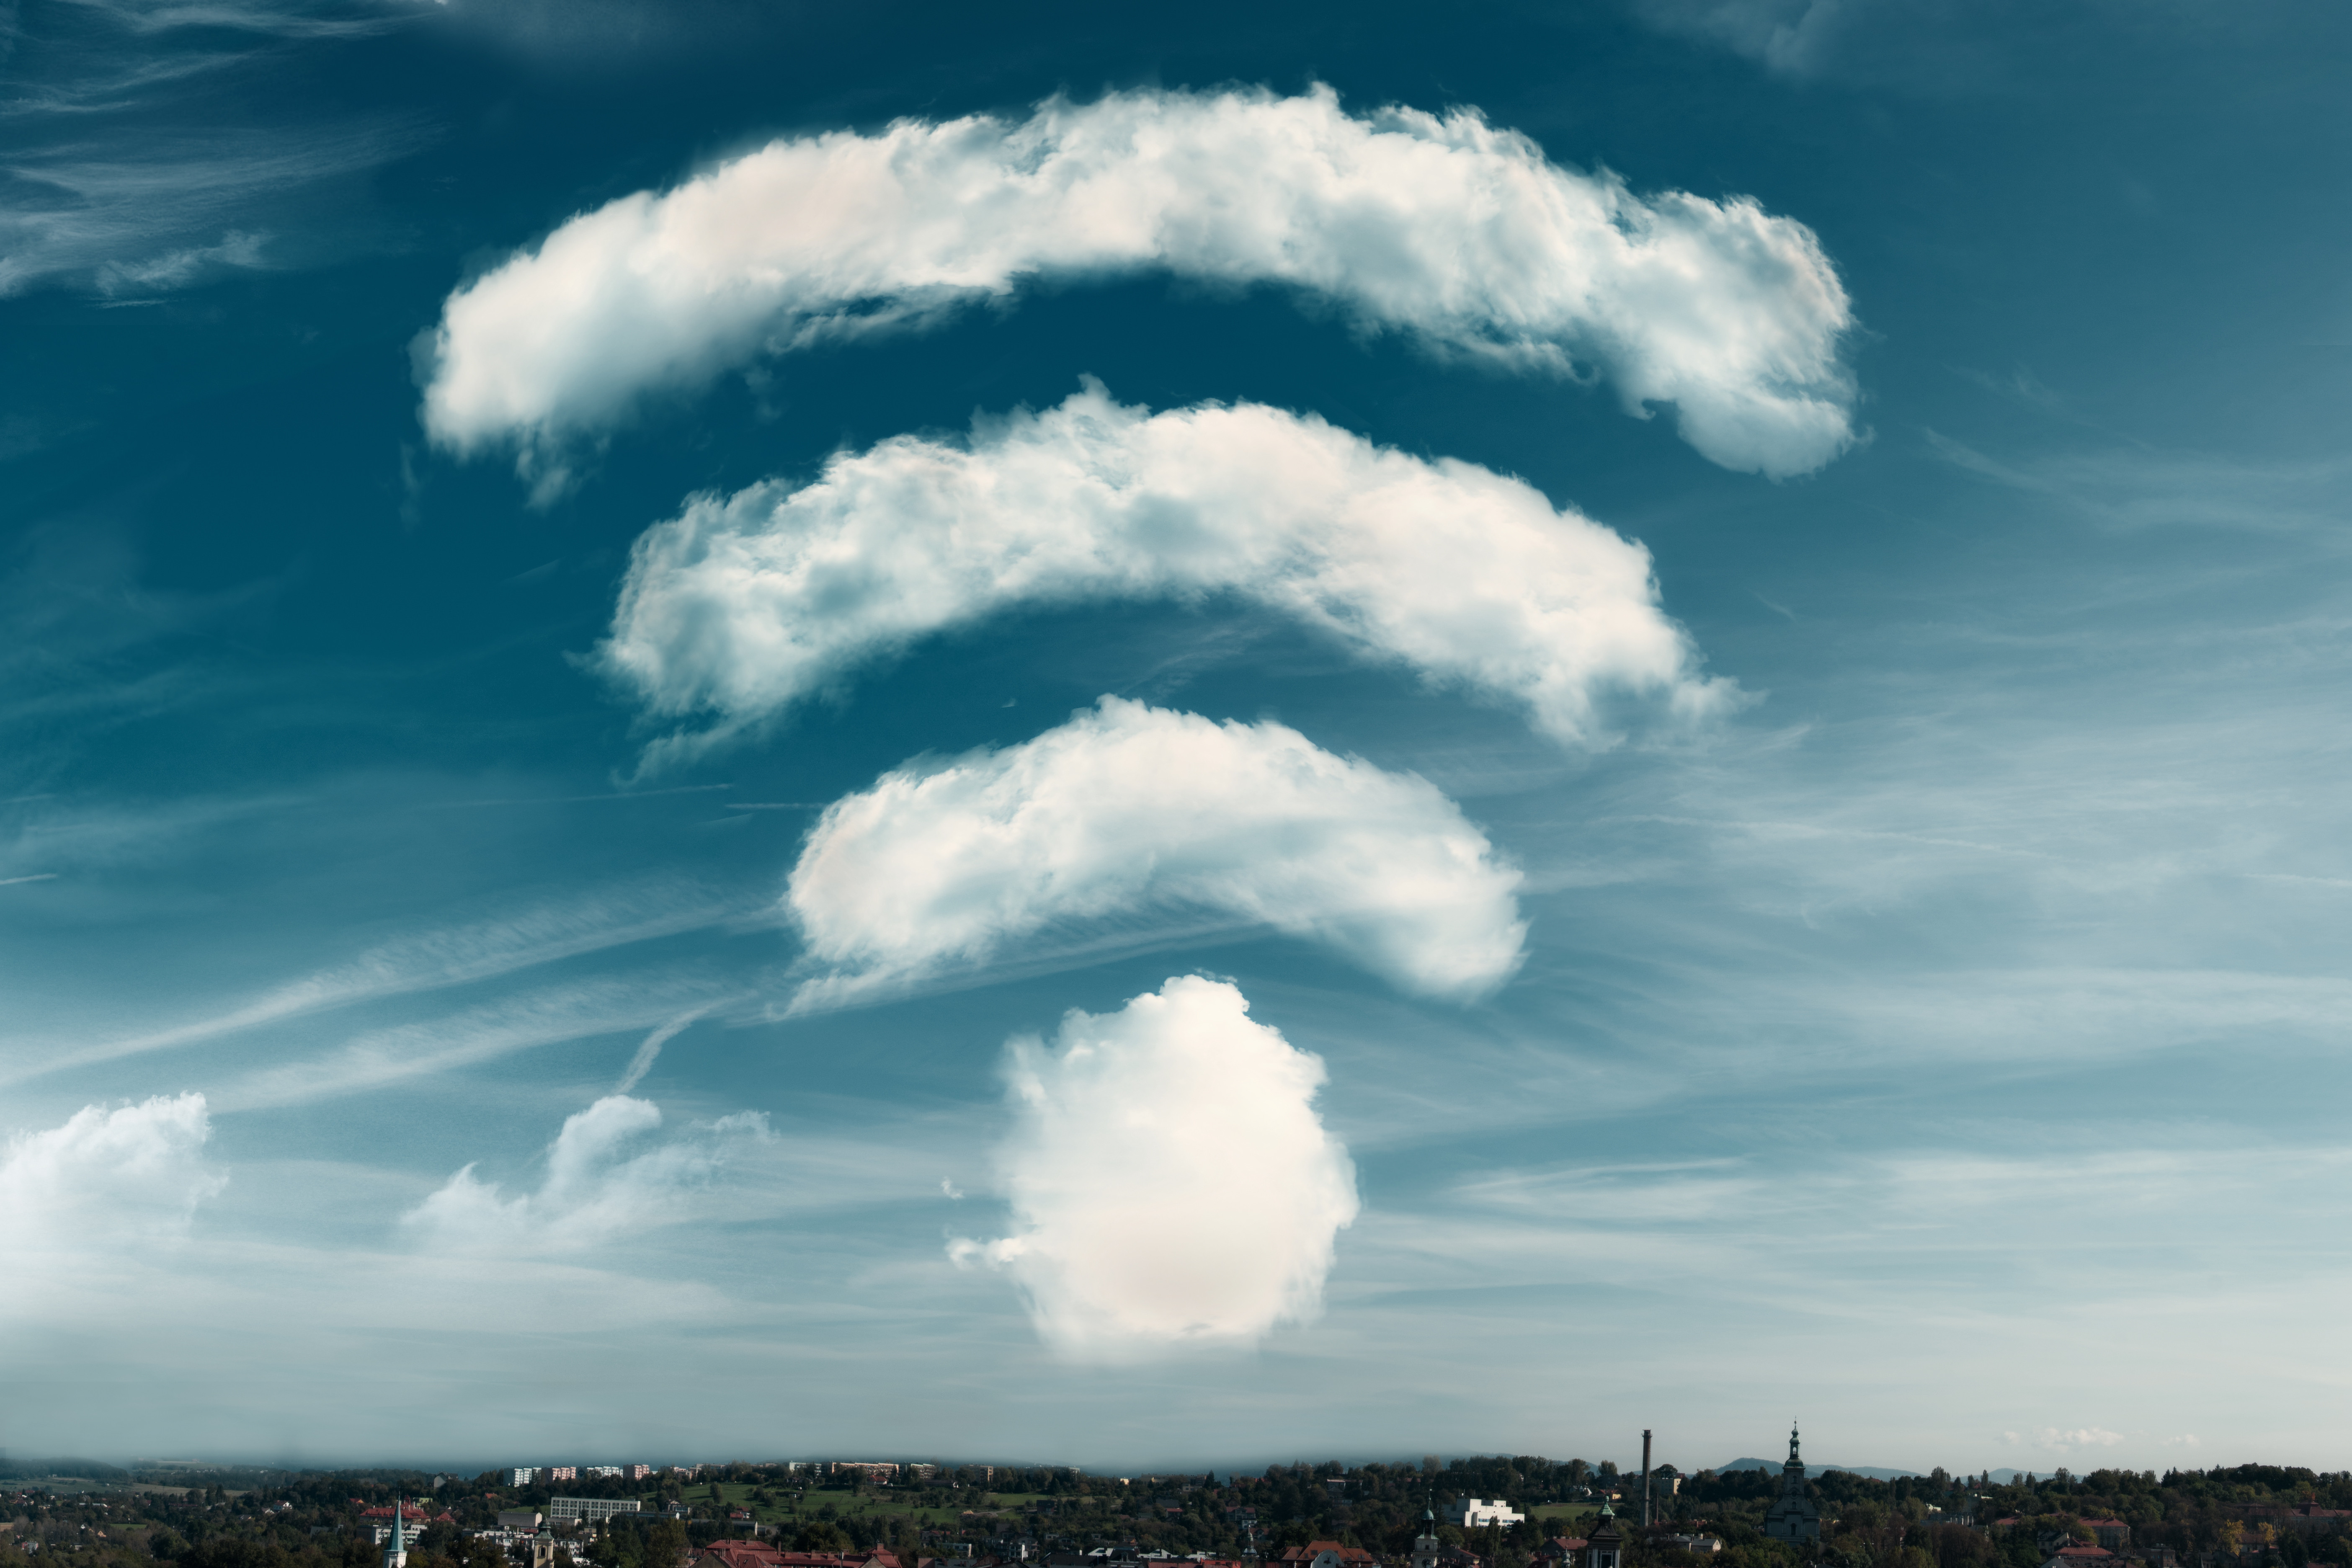 La prochaine génération de Wi-Fi apportera-t-elle la détection de mouvement à domicile ?